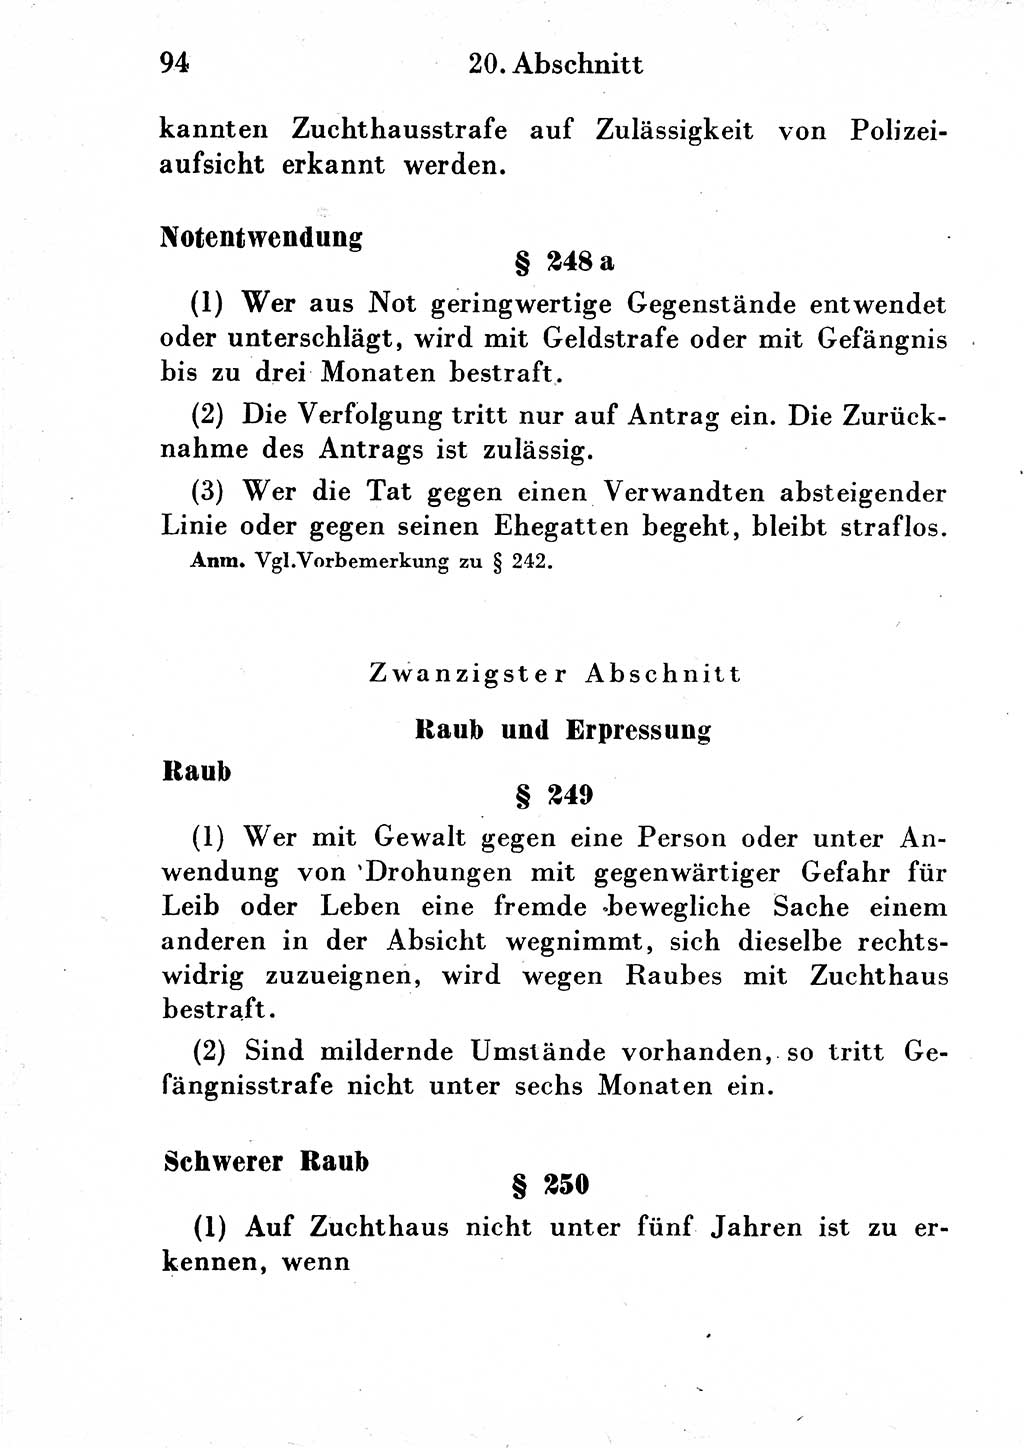 Strafgesetzbuch (StGB) und andere Strafgesetze [Deutsche Demokratische Republik (DDR)] 1954, Seite 94 (StGB Strafges. DDR 1954, S. 94)